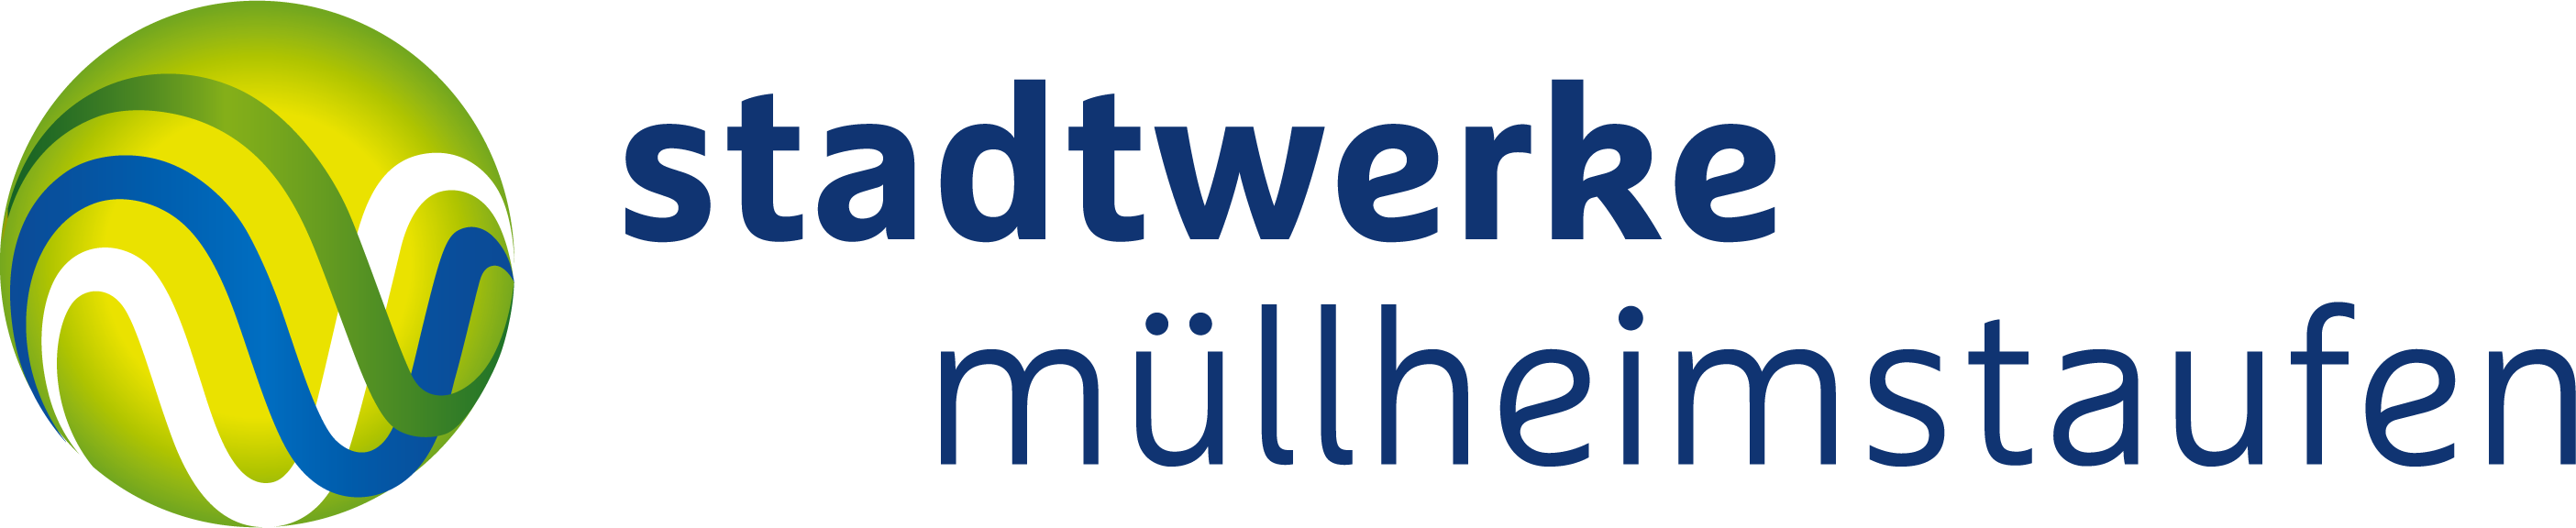 freigestelltes Logo blaue Schrift